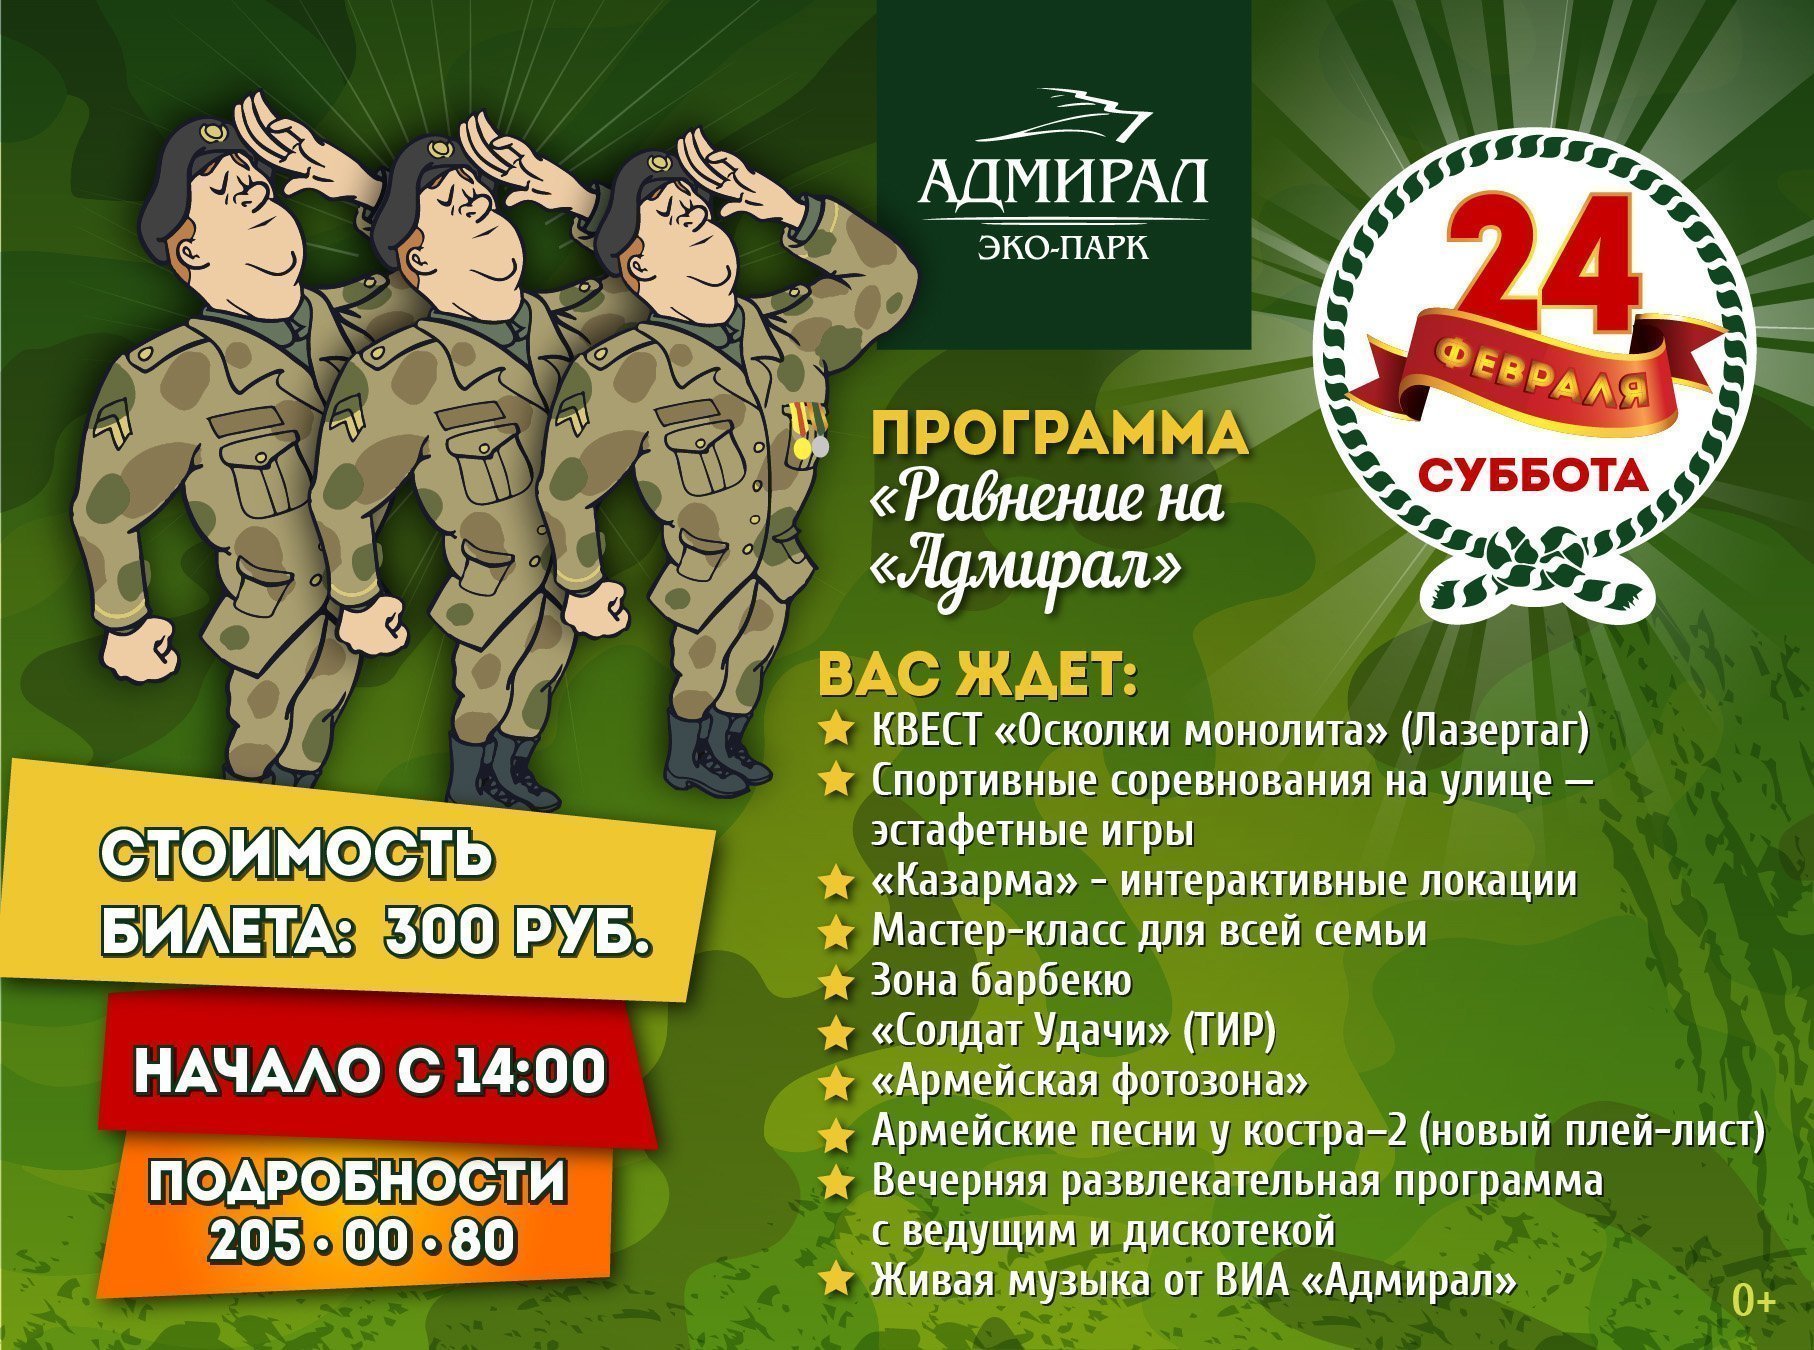 Россия 1 программа 23 февраля. Название игровой программы к 23 февраля. Развлекательная программа на 23 февраля.